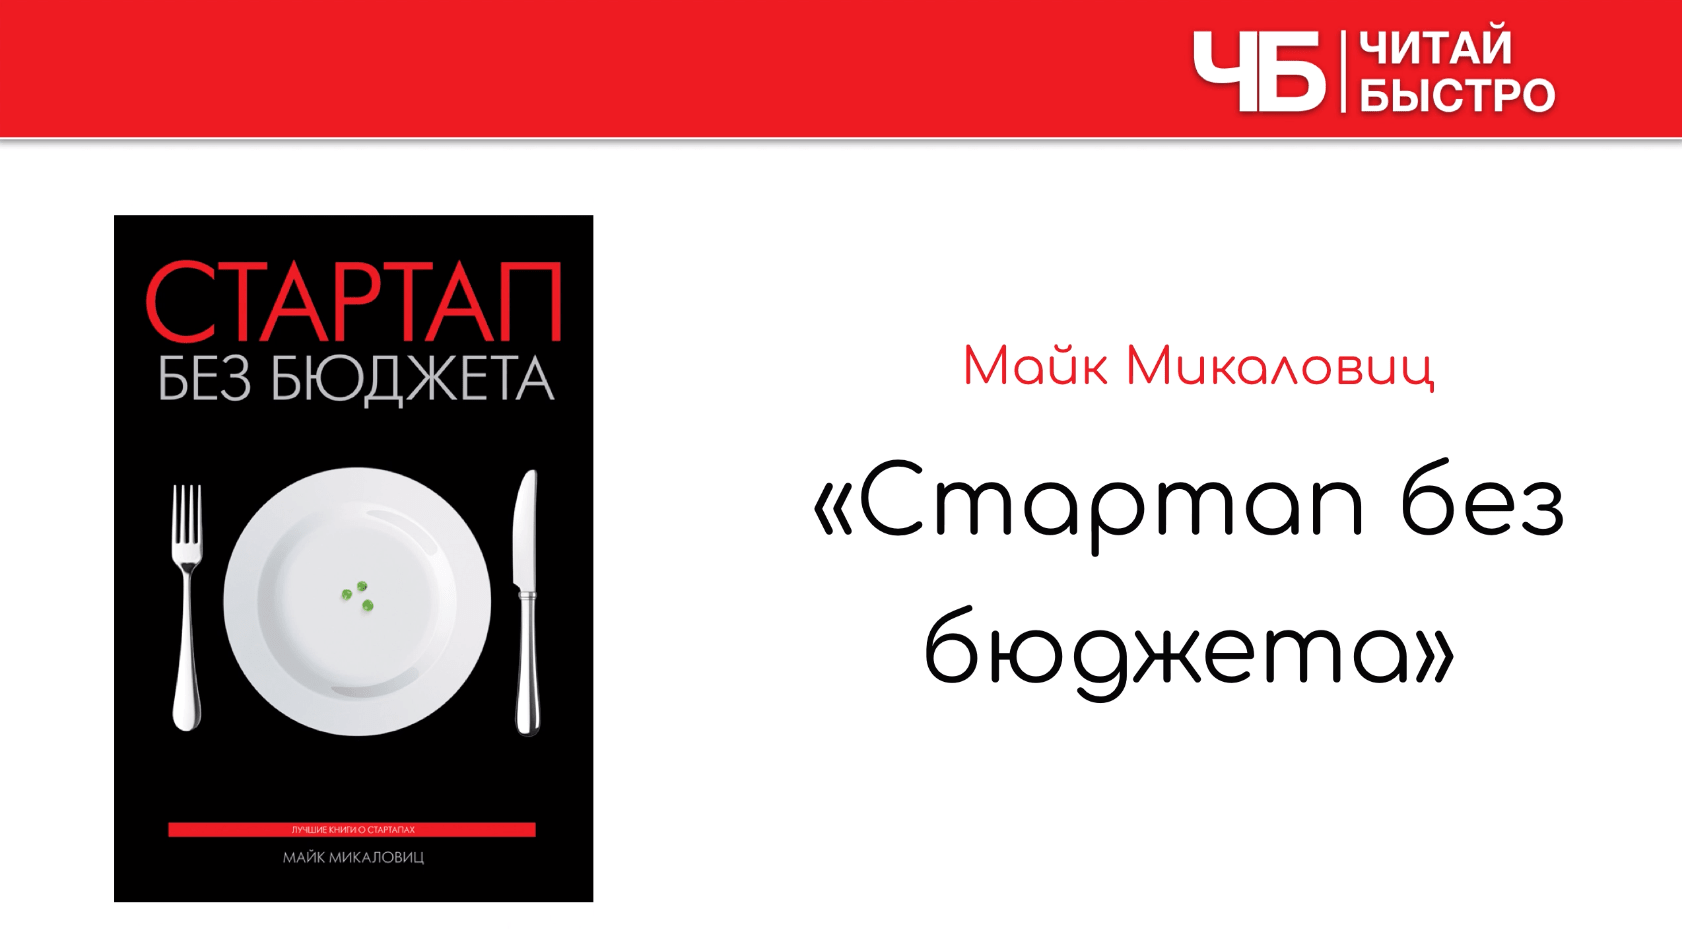 Заглавный слайд краткого содержания книги Майка Микаловица «Стартап без бюджета».